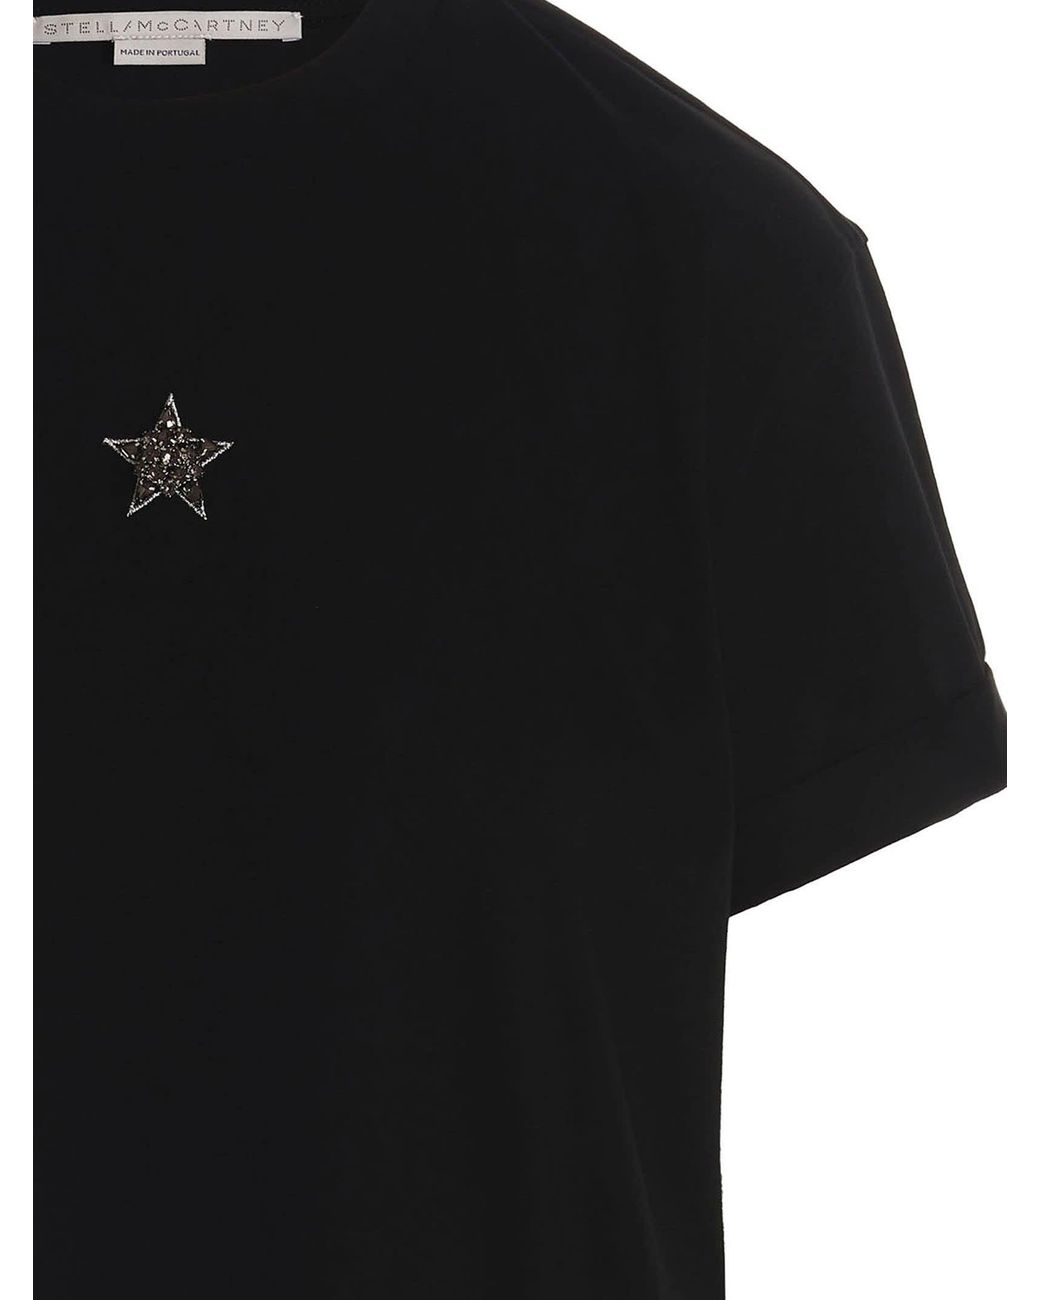 Stella McCartney Mini Star T-shirt in Black | Lyst